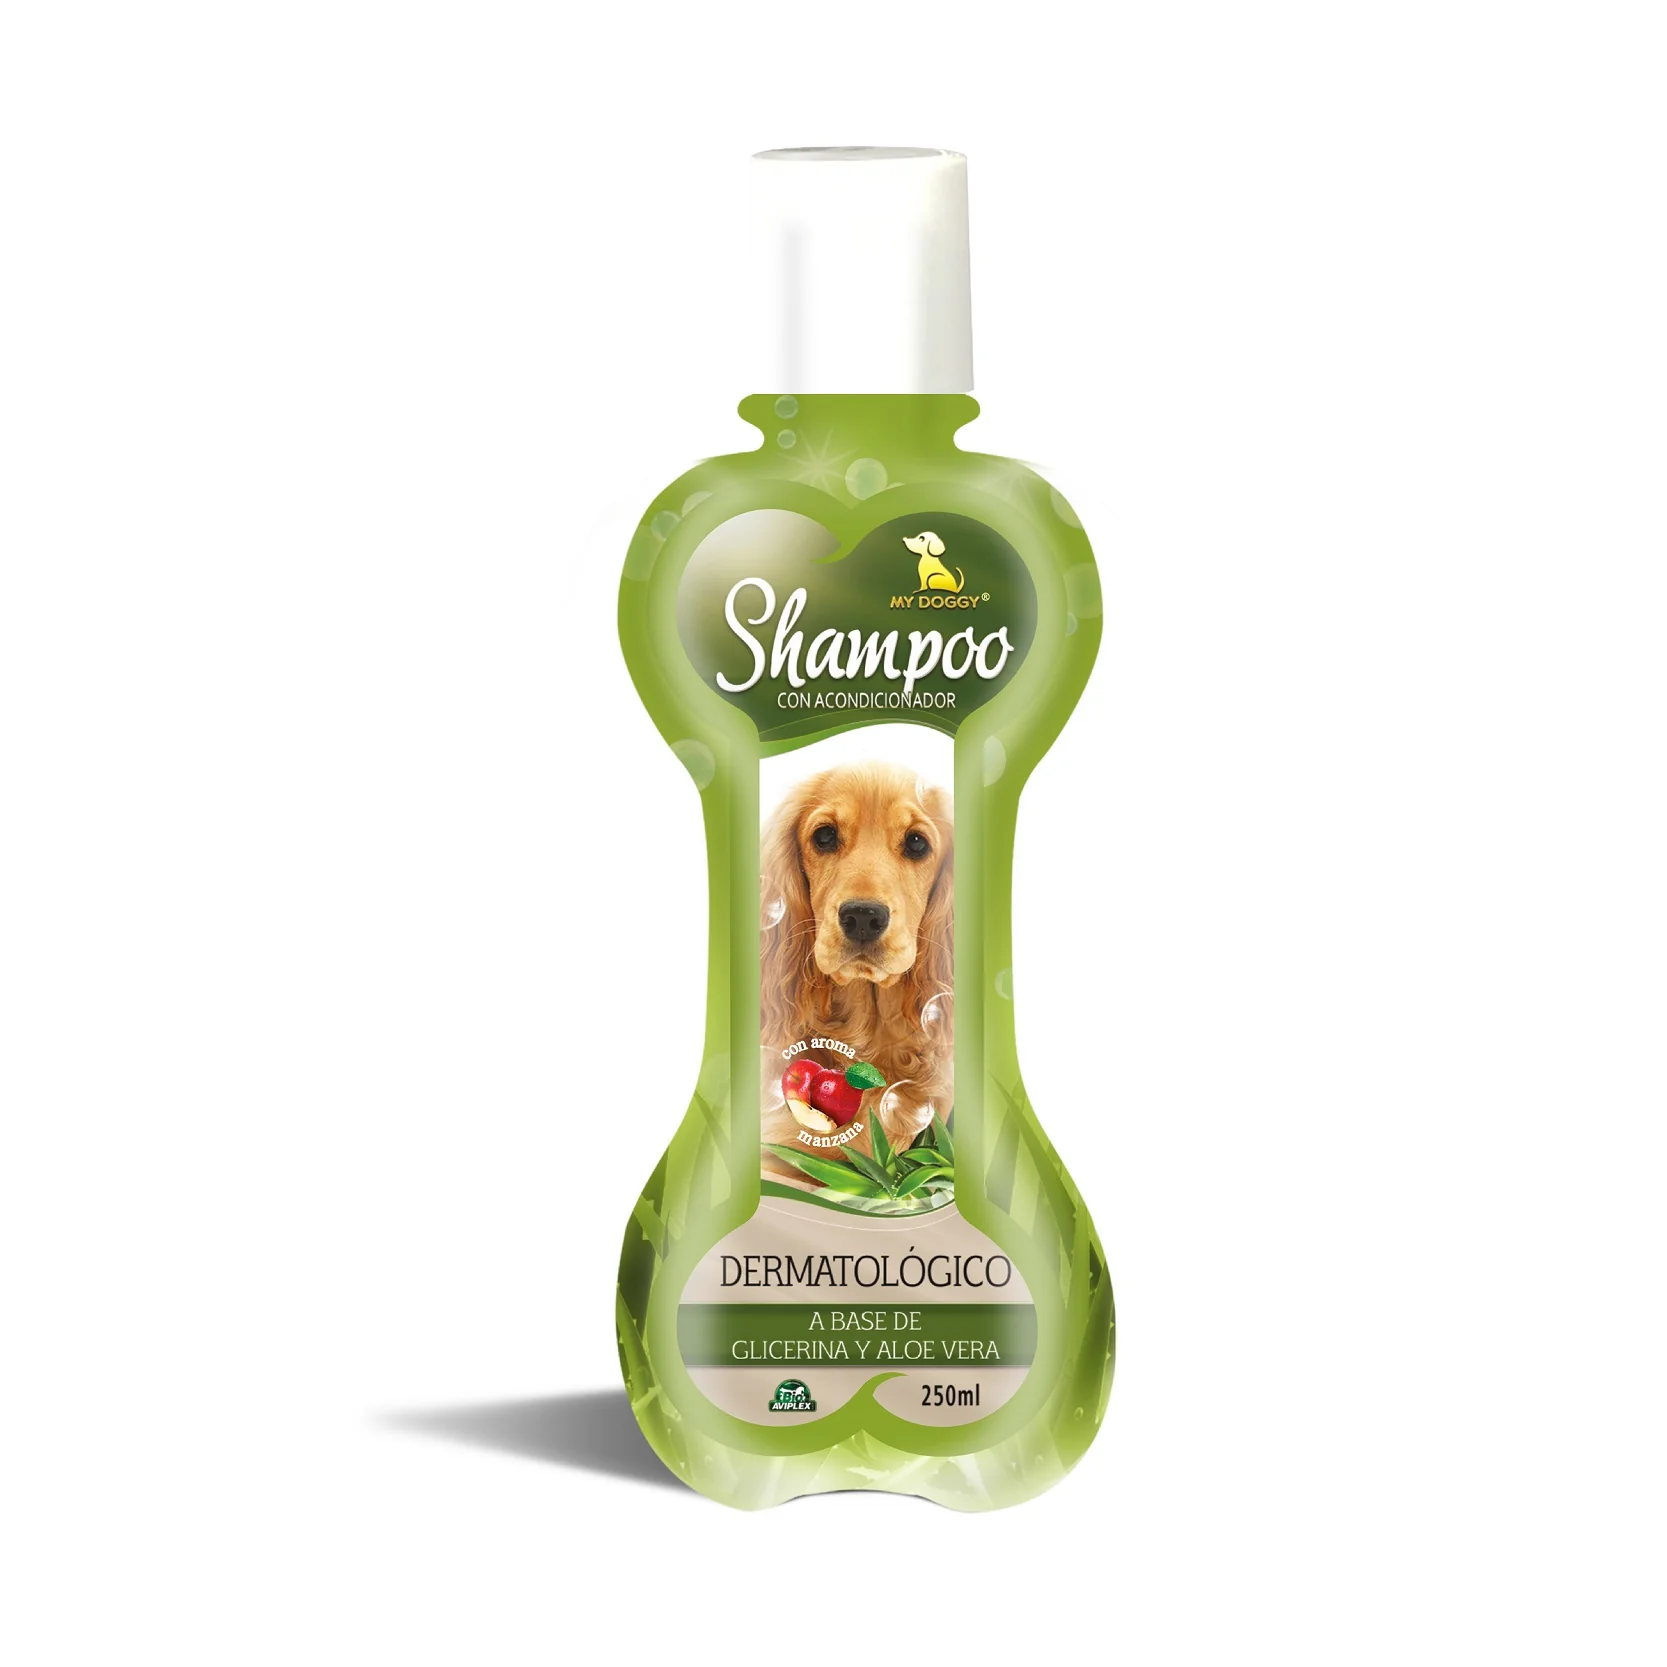 shampoo demartologico mydoggy